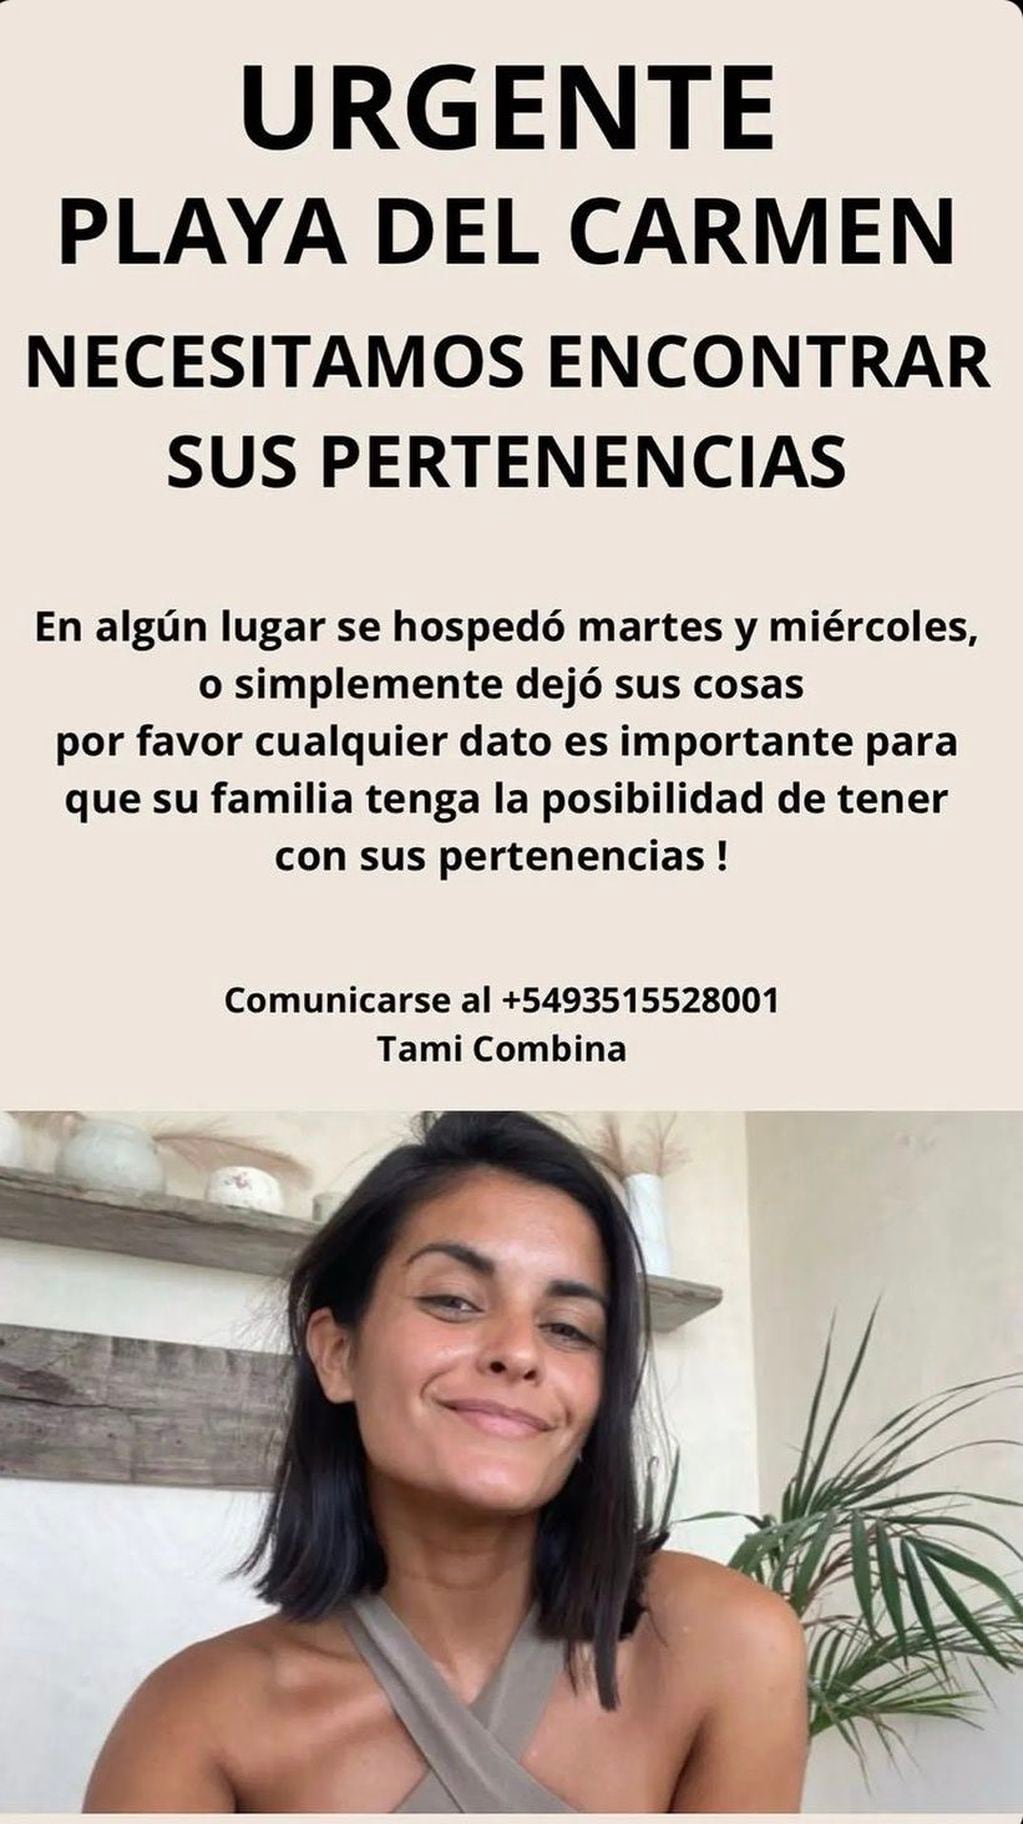 El pedido de familiares y amigos de Nani Ávila.